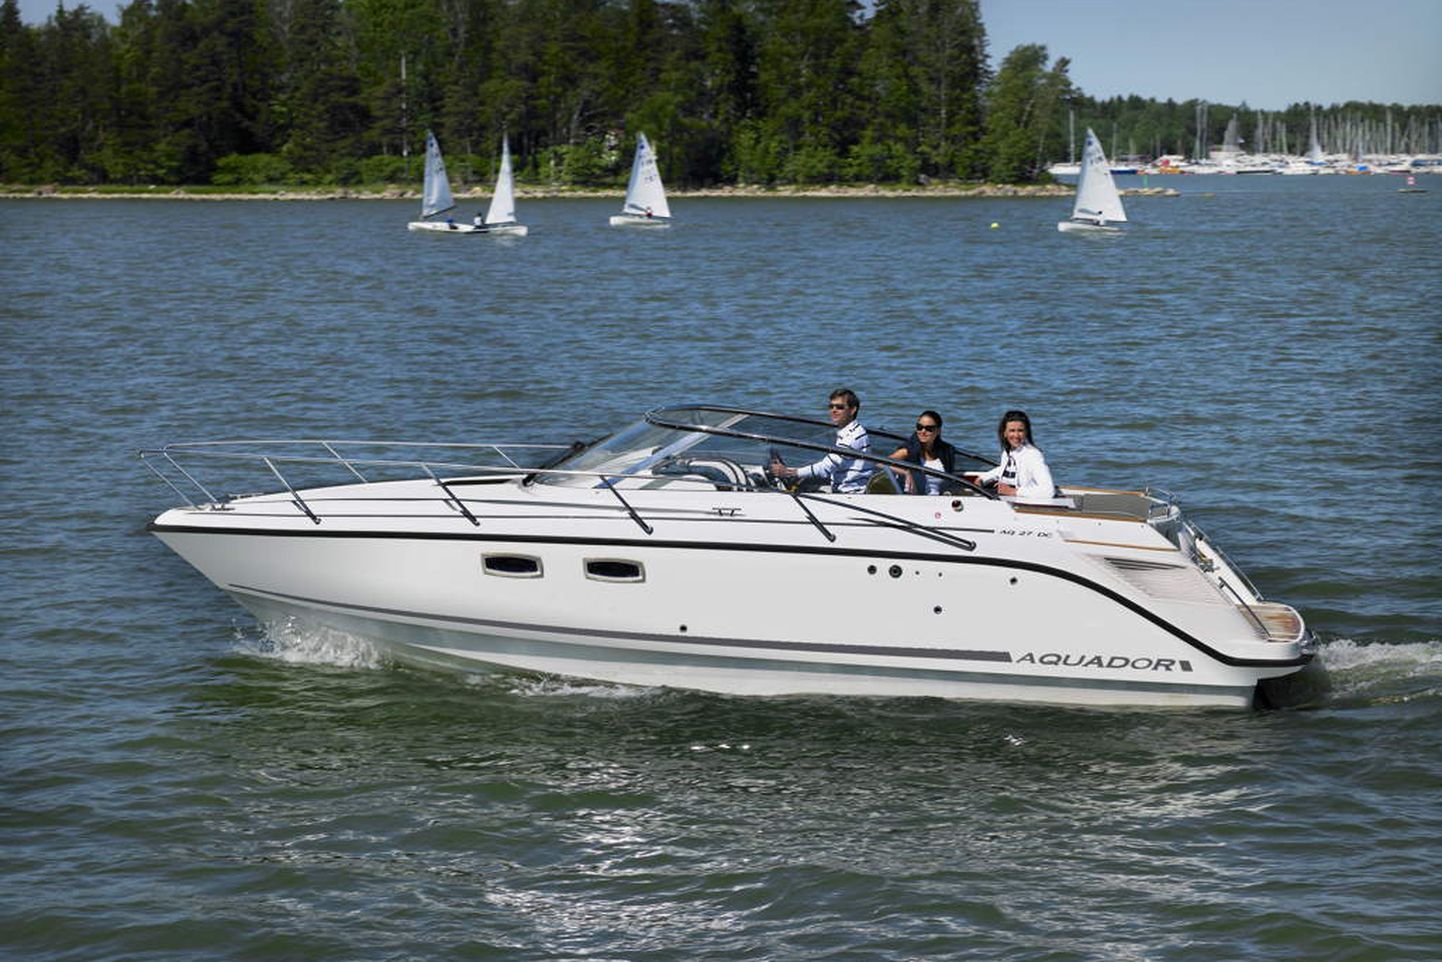 Aquador on üks Bella-Veneet OY kaubamärkidest, mille Nimbus Boats tehinguga omandas